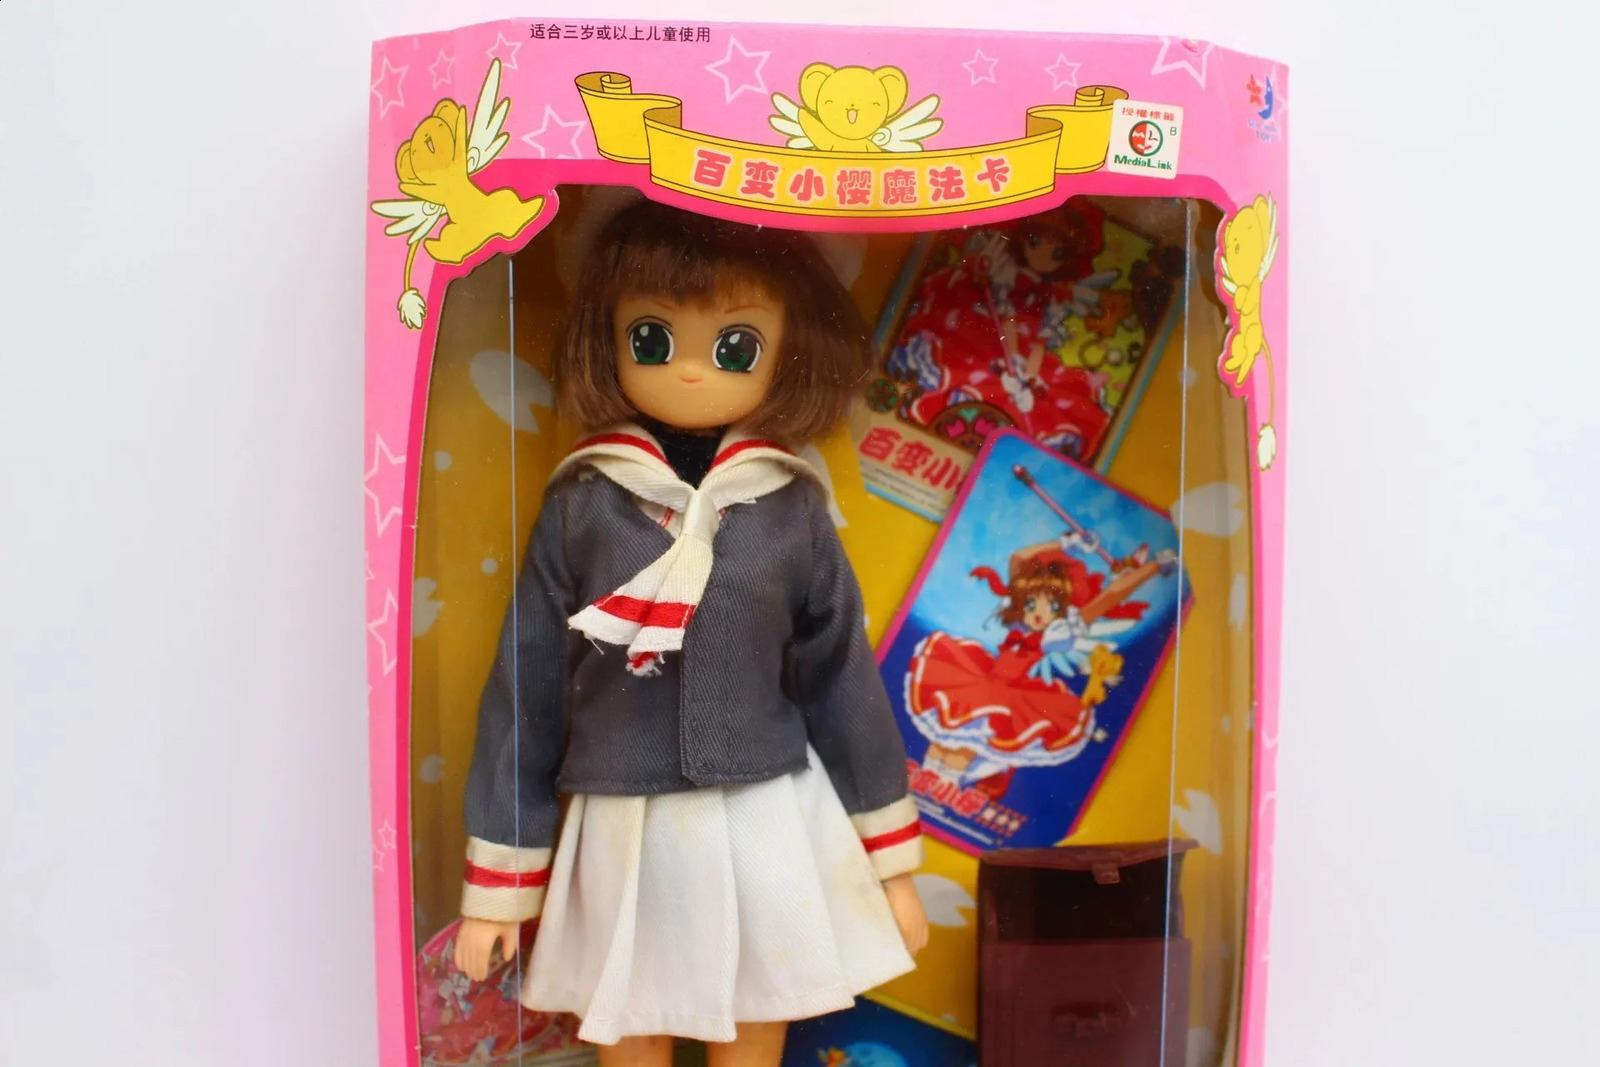 Anime Cardcaptor Sakura Doll Bjd Figure Changing Kawaii Girl Action Figurine Christmas Toys Gifts For Girls 240123